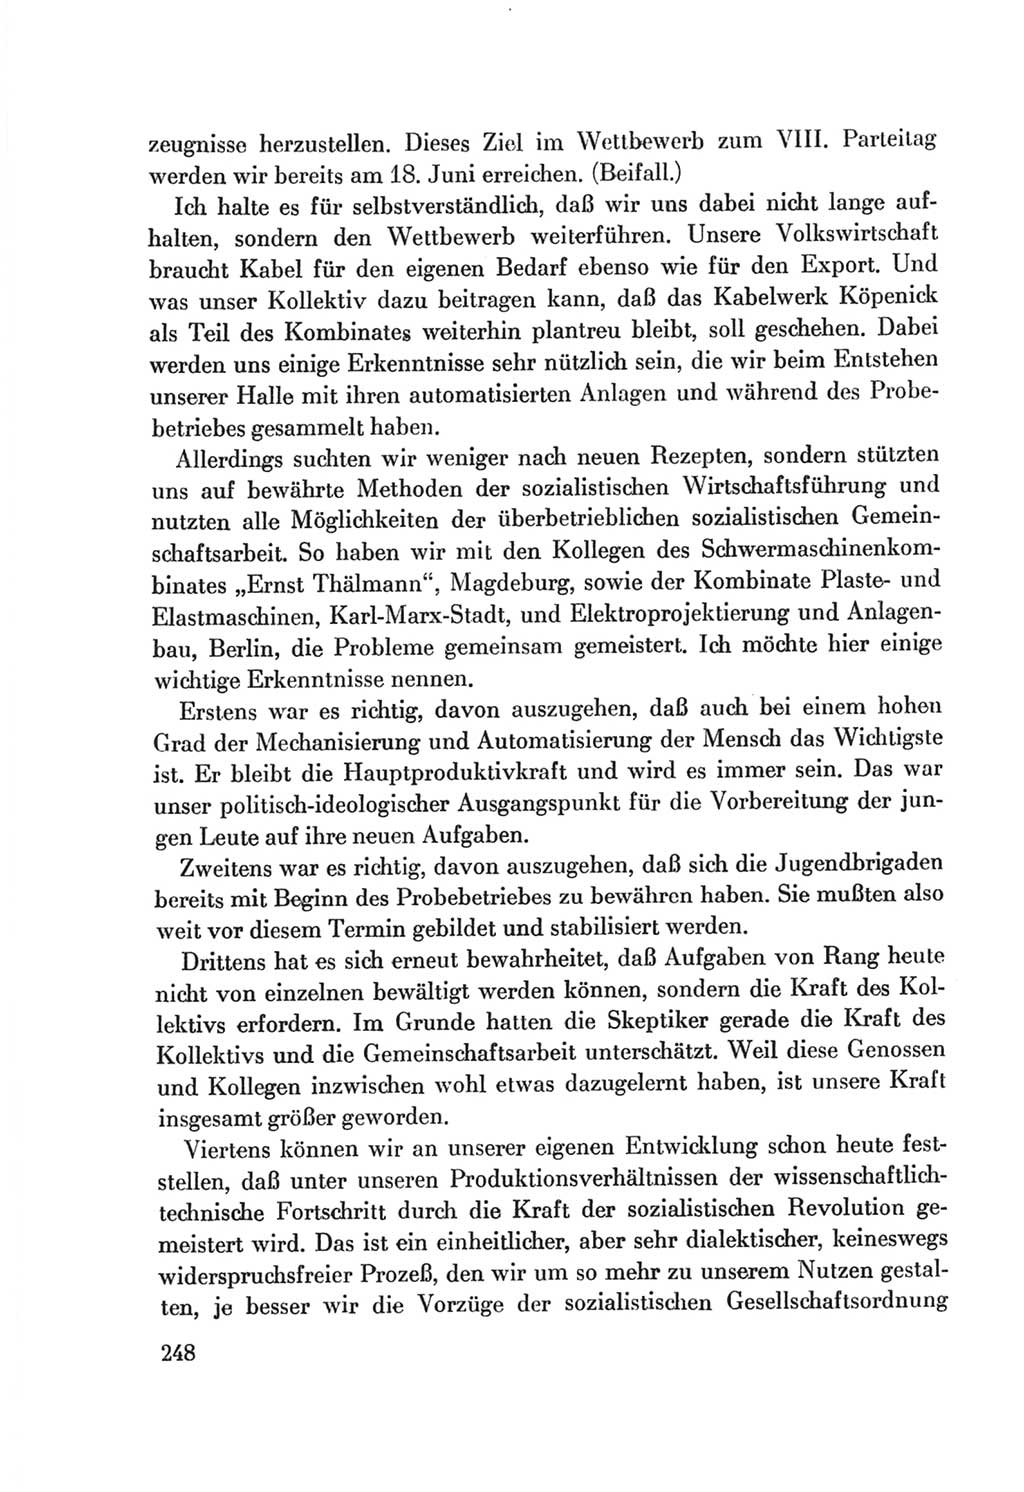 Protokoll der Verhandlungen des Ⅷ. Parteitages der Sozialistischen Einheitspartei Deutschlands (SED) [Deutsche Demokratische Republik (DDR)] 1971, Band 1, Seite 248 (Prot. Verh. Ⅷ. PT SED DDR 1971, Bd. 1, S. 248)